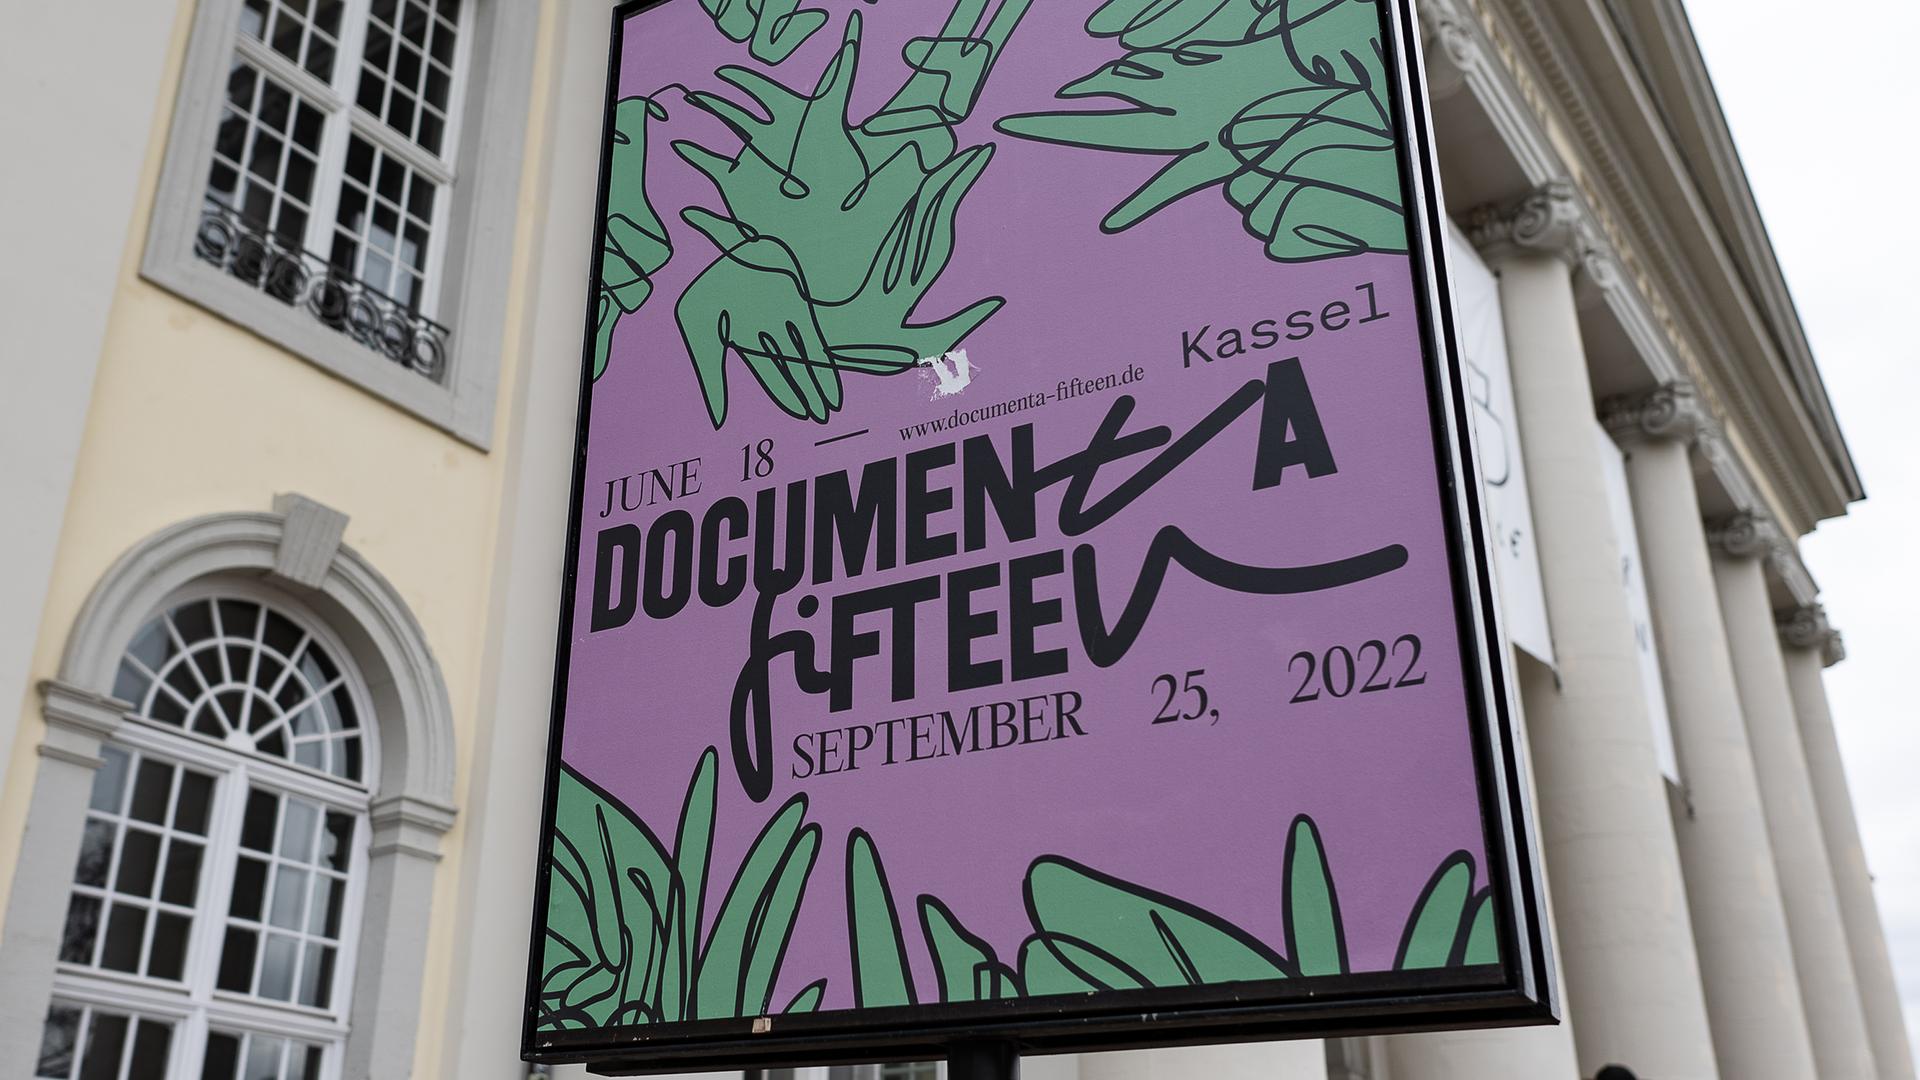 Ein Schild "documenta fifteen" ist vor dem Museum Fridericianum zu sehen. Die documenta fifteen gilt als die weltweit bedeutendste Reihe von Ausstellungen für zeitgenössische Kunst. Sie geht vom 18.06. bis zum 25.09.2022.